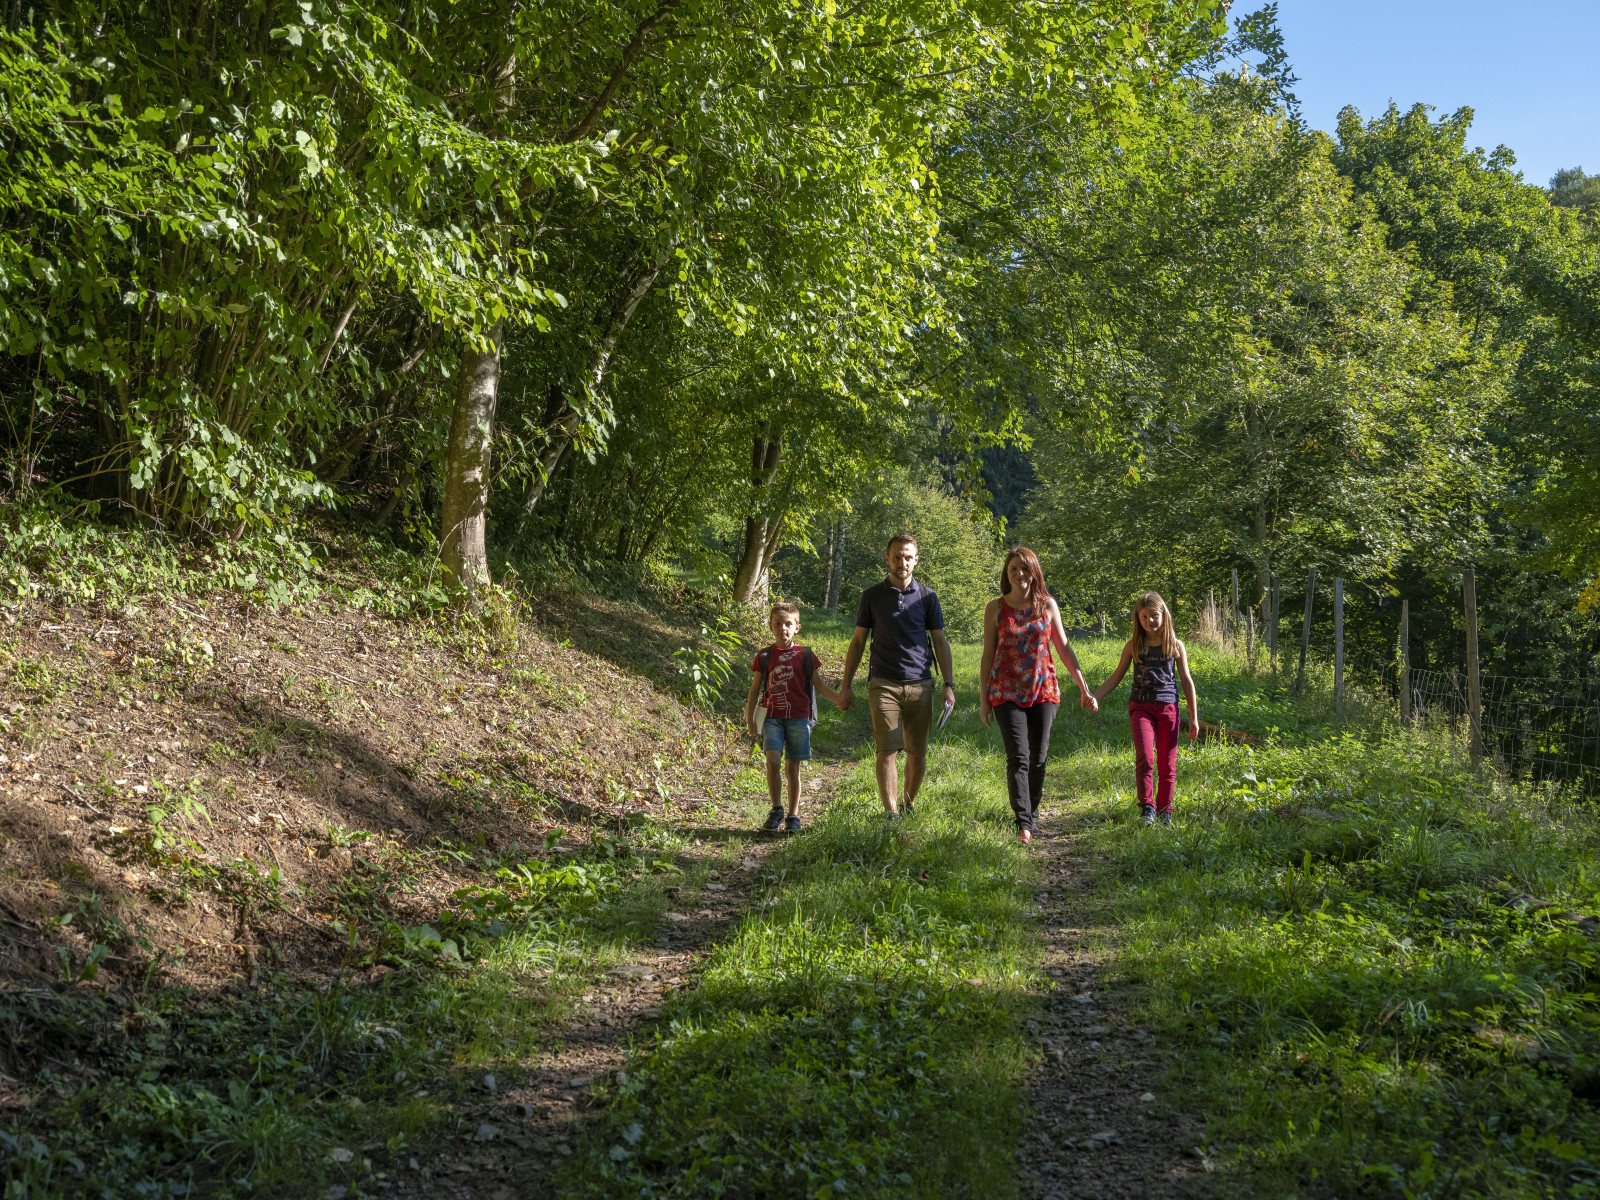 Balade familiale sur un chemin de randonnée dans un décor verdoyant